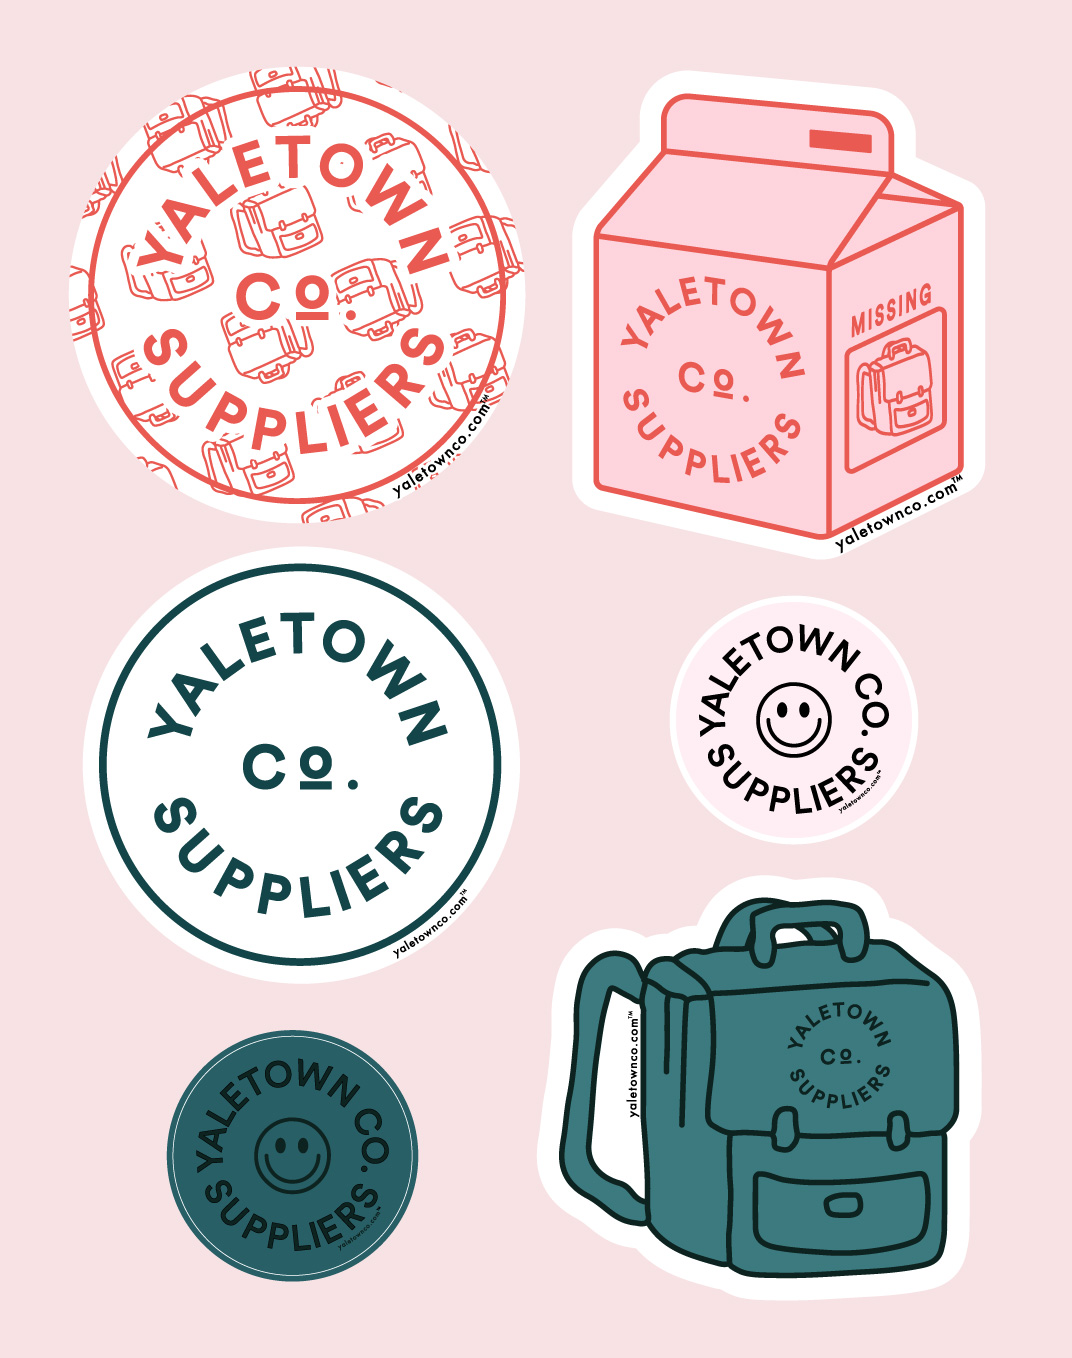 Yaletown Co Suppliers sticker sheet